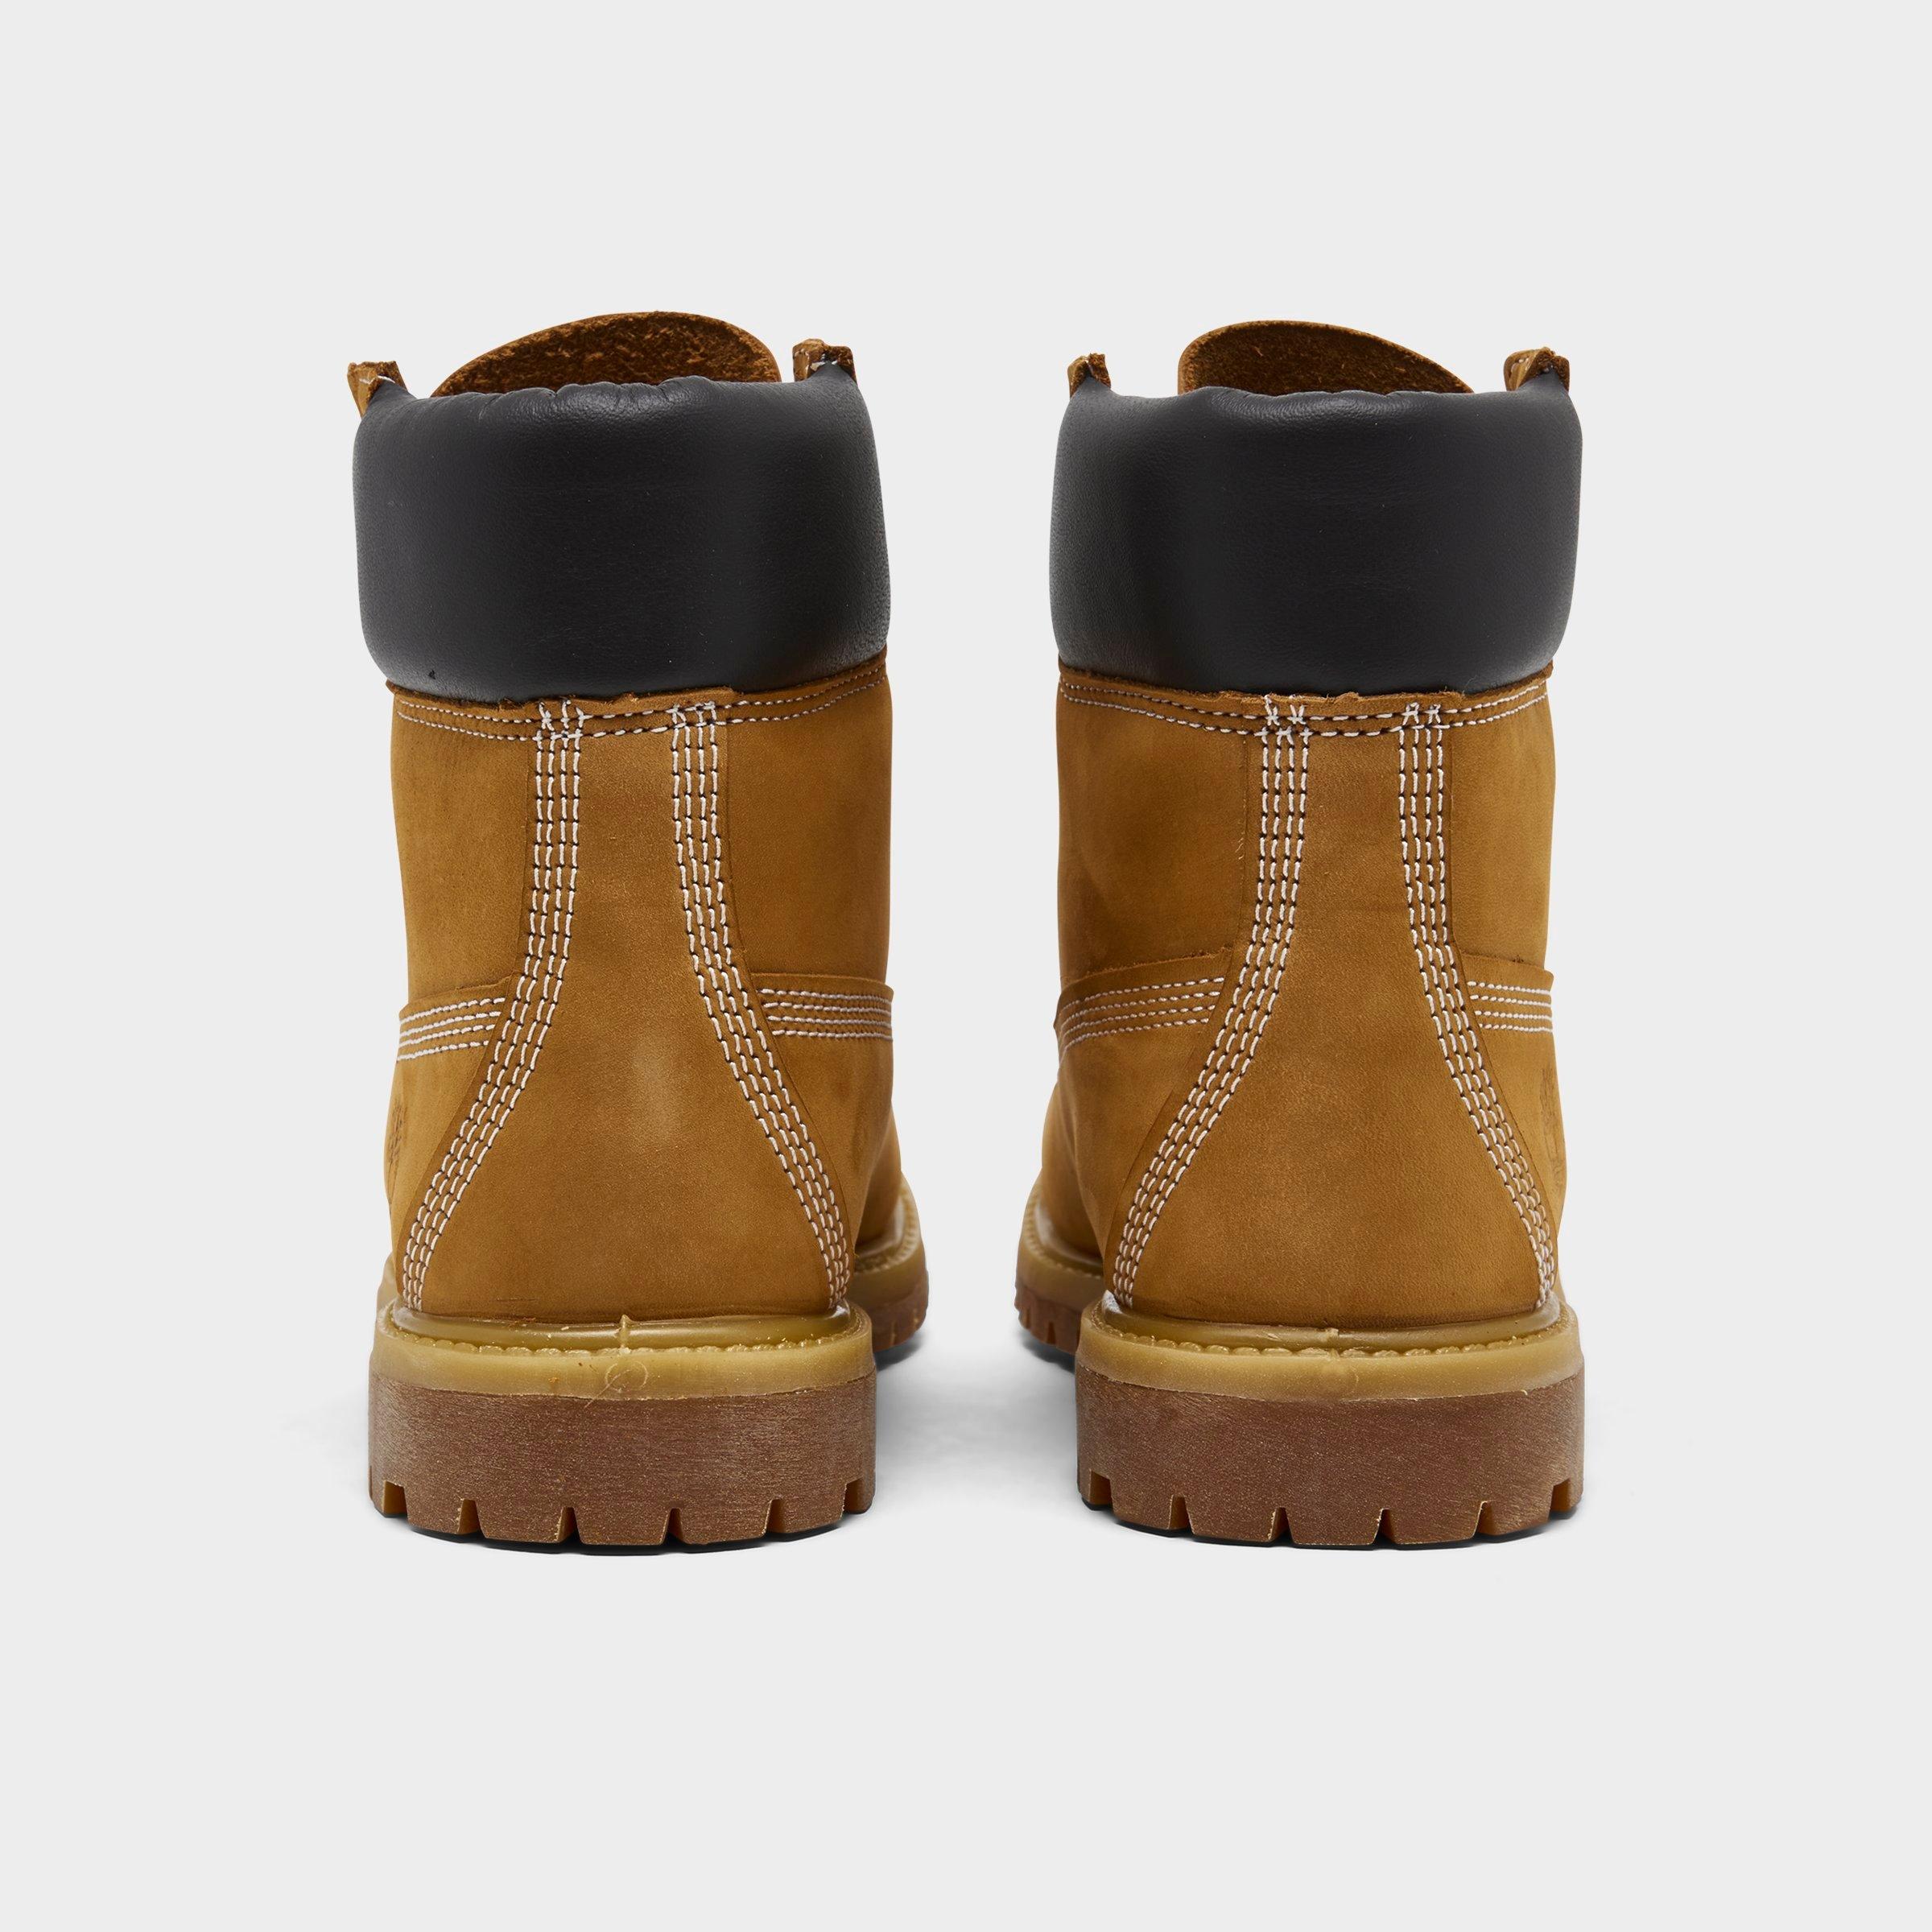 waterproof wide width womens boots